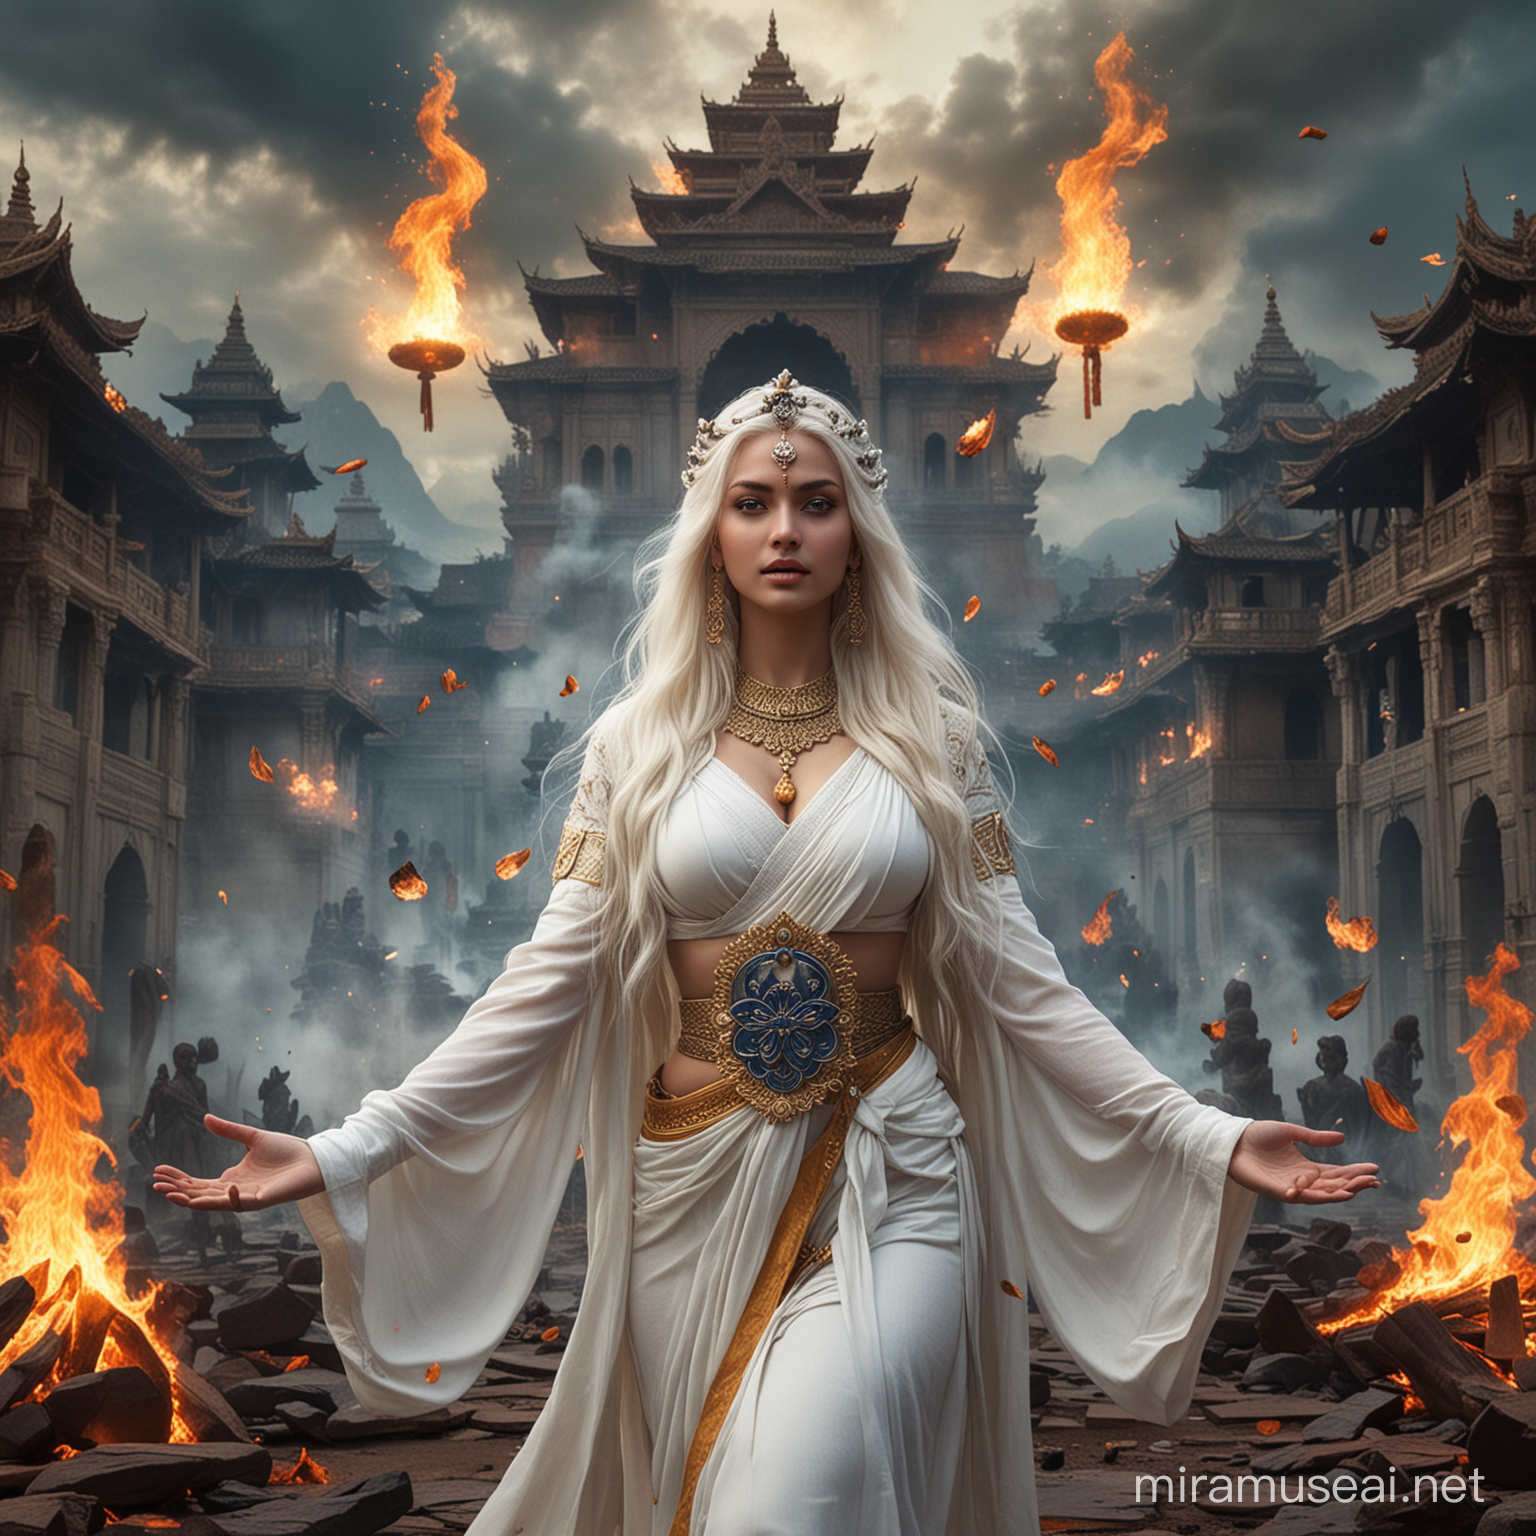 Powerful Hindu Empress Goddess Conjuring Fire Amidst Demonic Deities